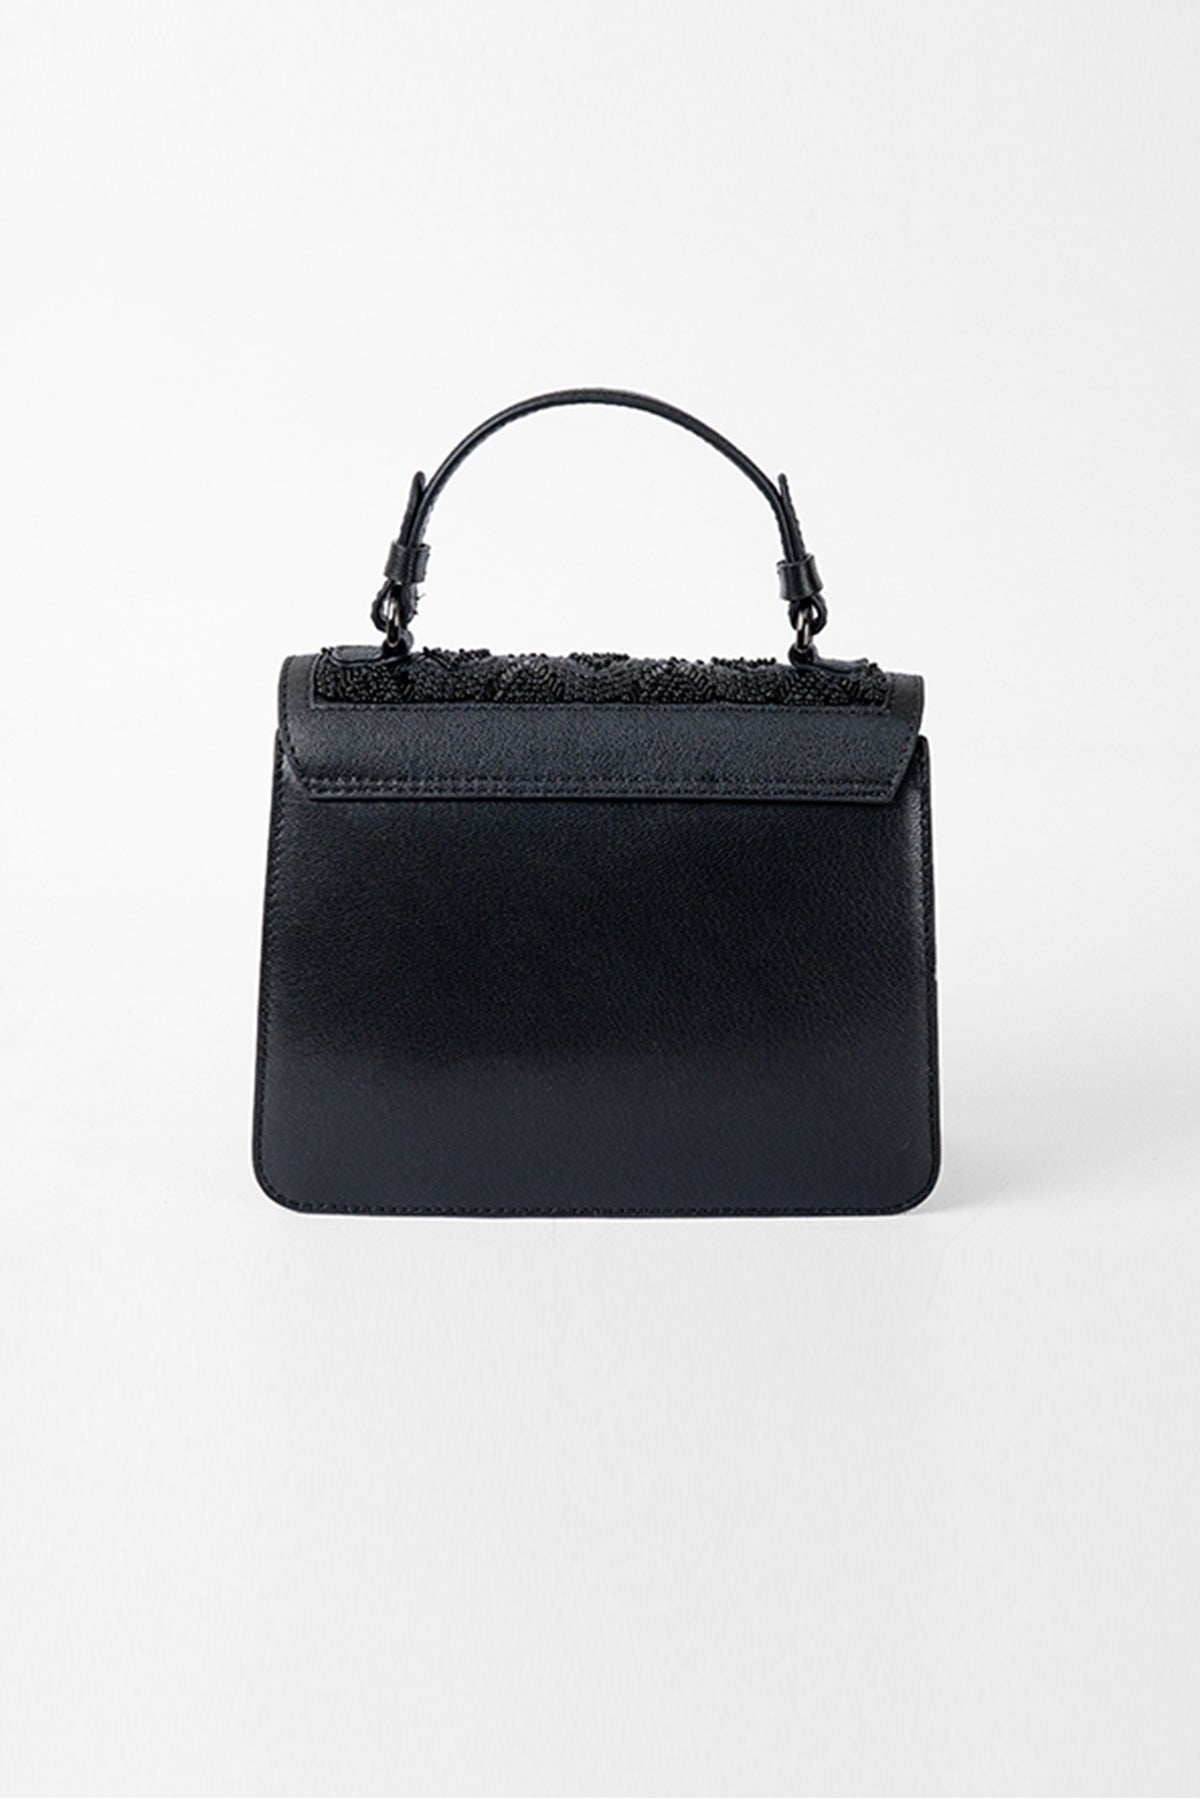 Daisy Embellished-Black on Black Leather Shoulder Bag